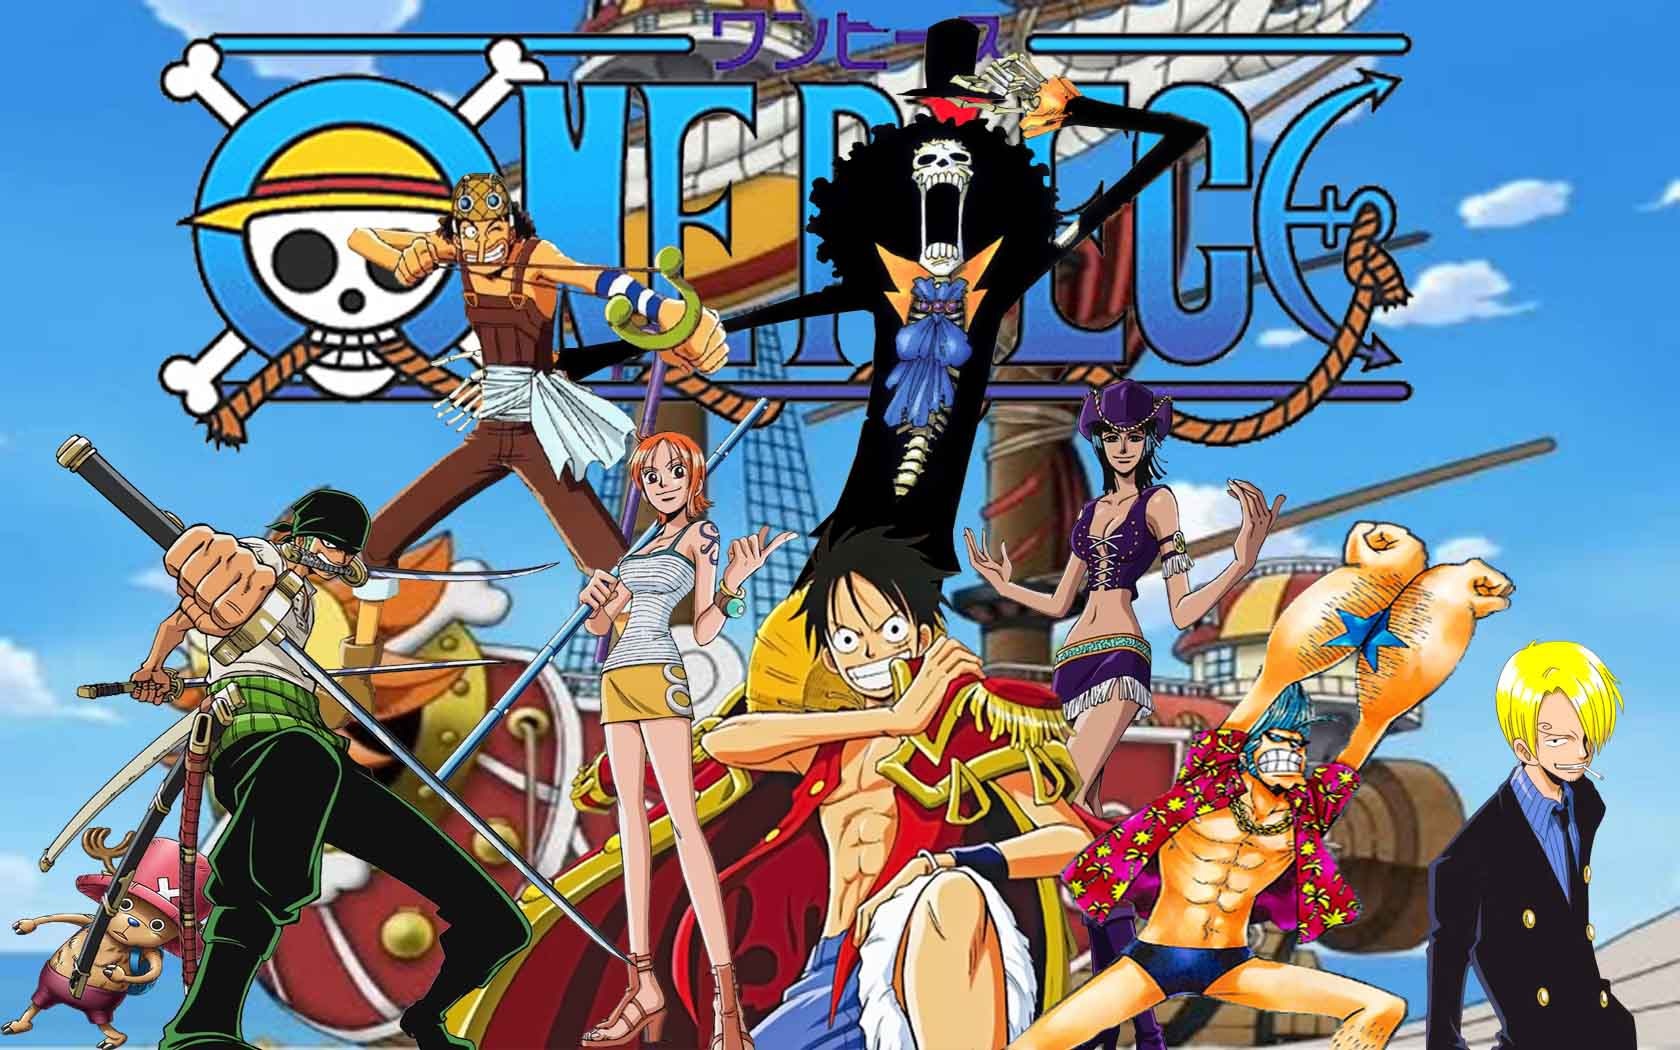 Các nhân vật trong bộ truyện tranh One Piece đã tạo điểm nhấn riêng với nét vẽ đặc sắc. Tất cả những điều đó đã được tái hiện tuyệt vời trong những bức ảnh Anime One Piece đẹp không tì vết này. Hãy chiêm ngưỡng và đắm mình trong thế giới huyền thoại của One Piece.